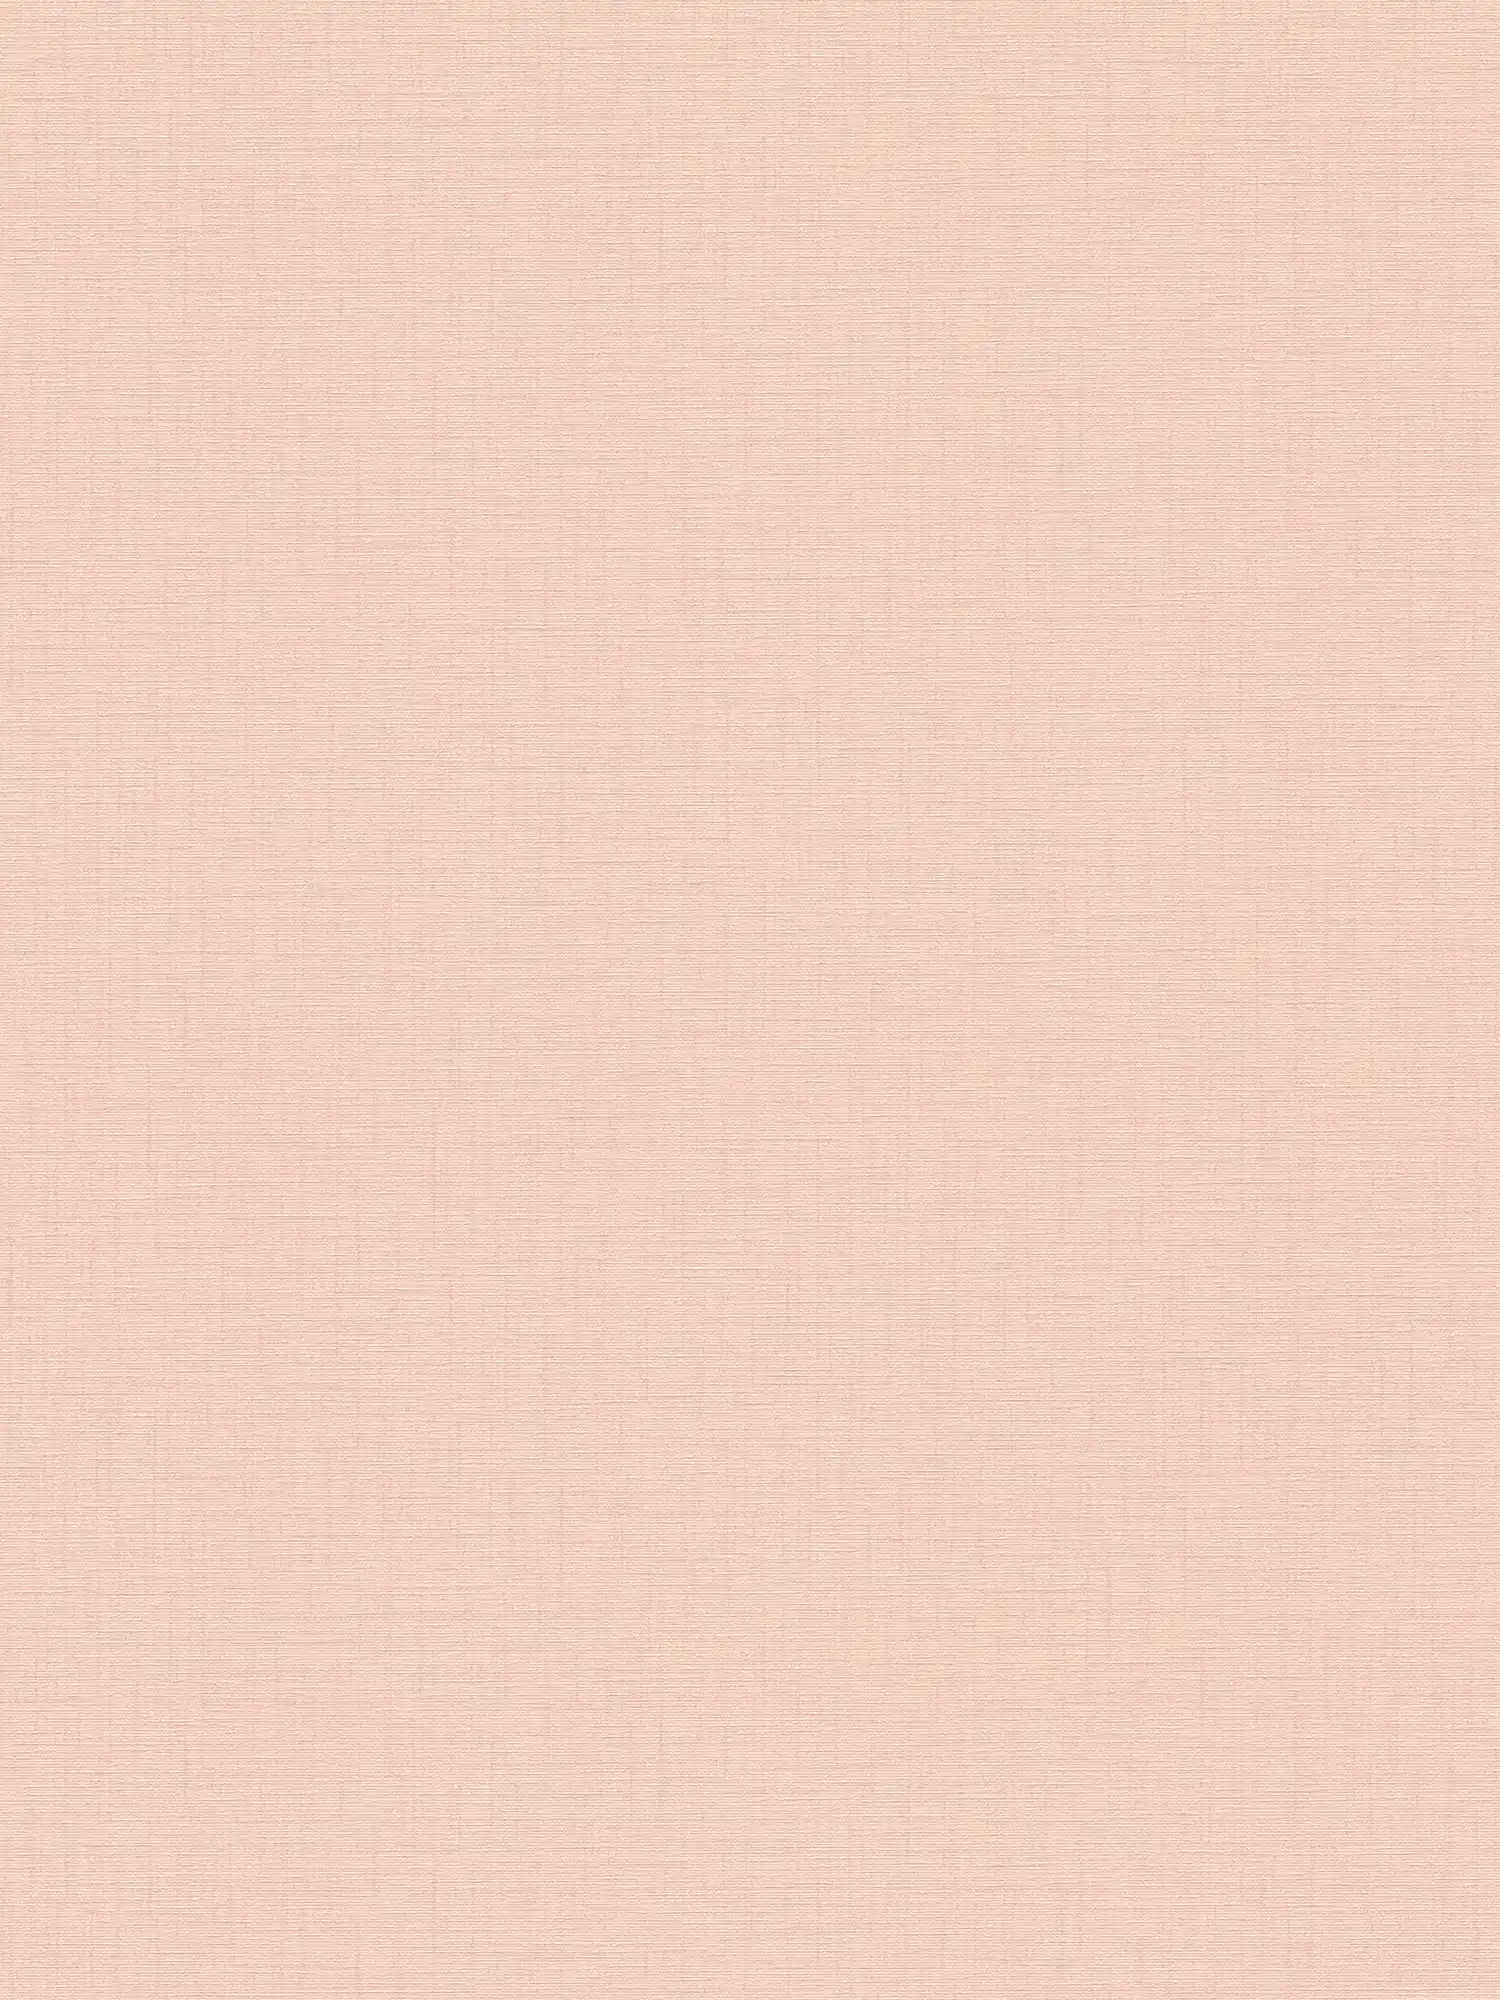 Papel Pintado Rosa Pálido Liso con Textura de Lino - Rosa
